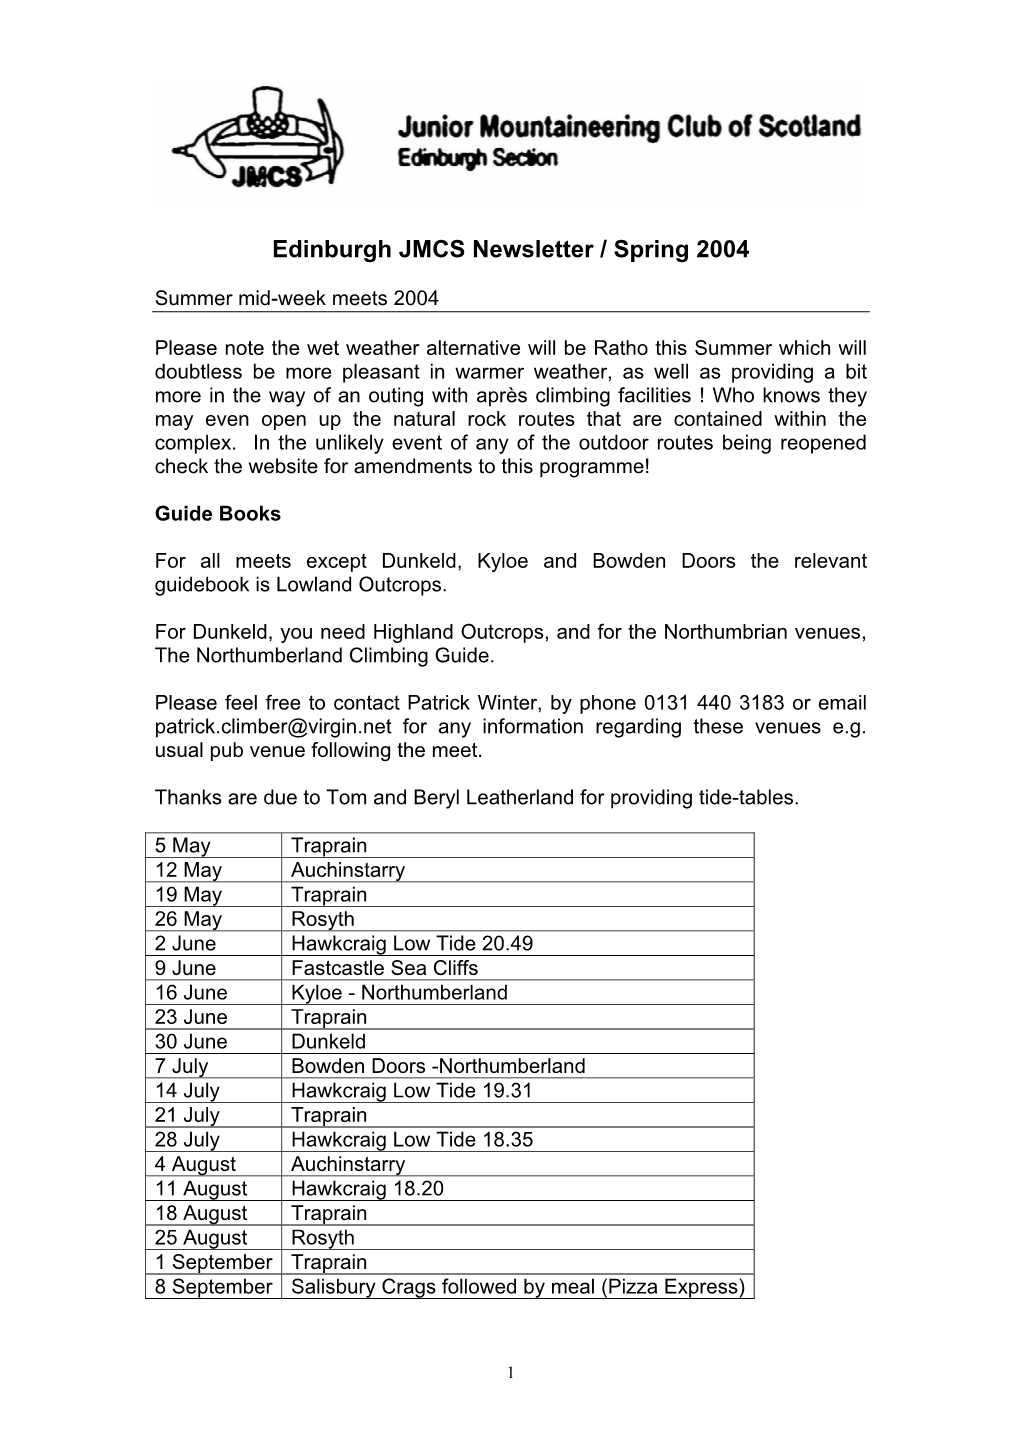 Edinburgh JMCS Newsletter – Spring 2004